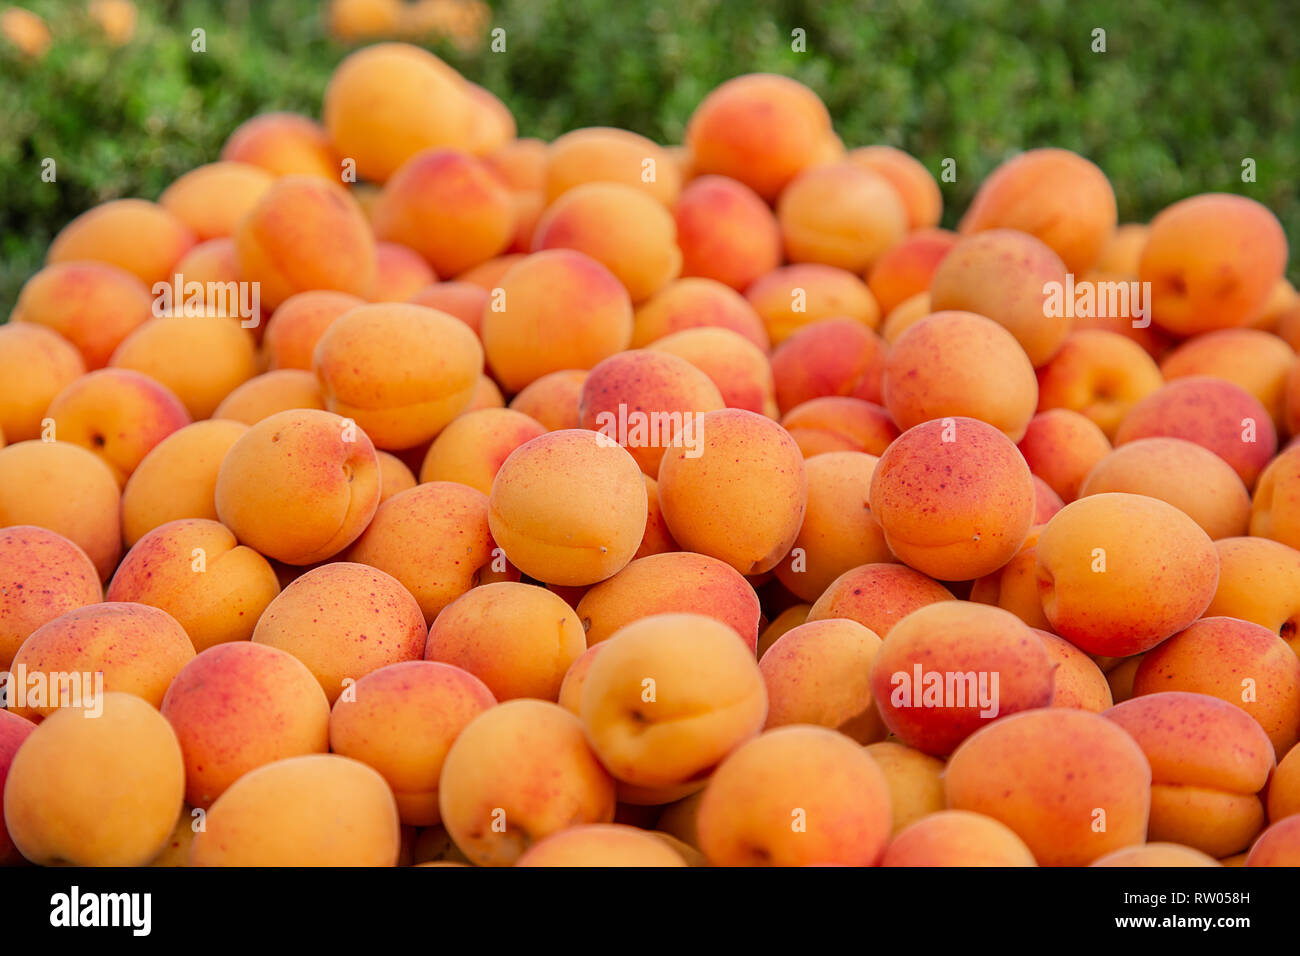 Массовый сбор абрикоса в ящики